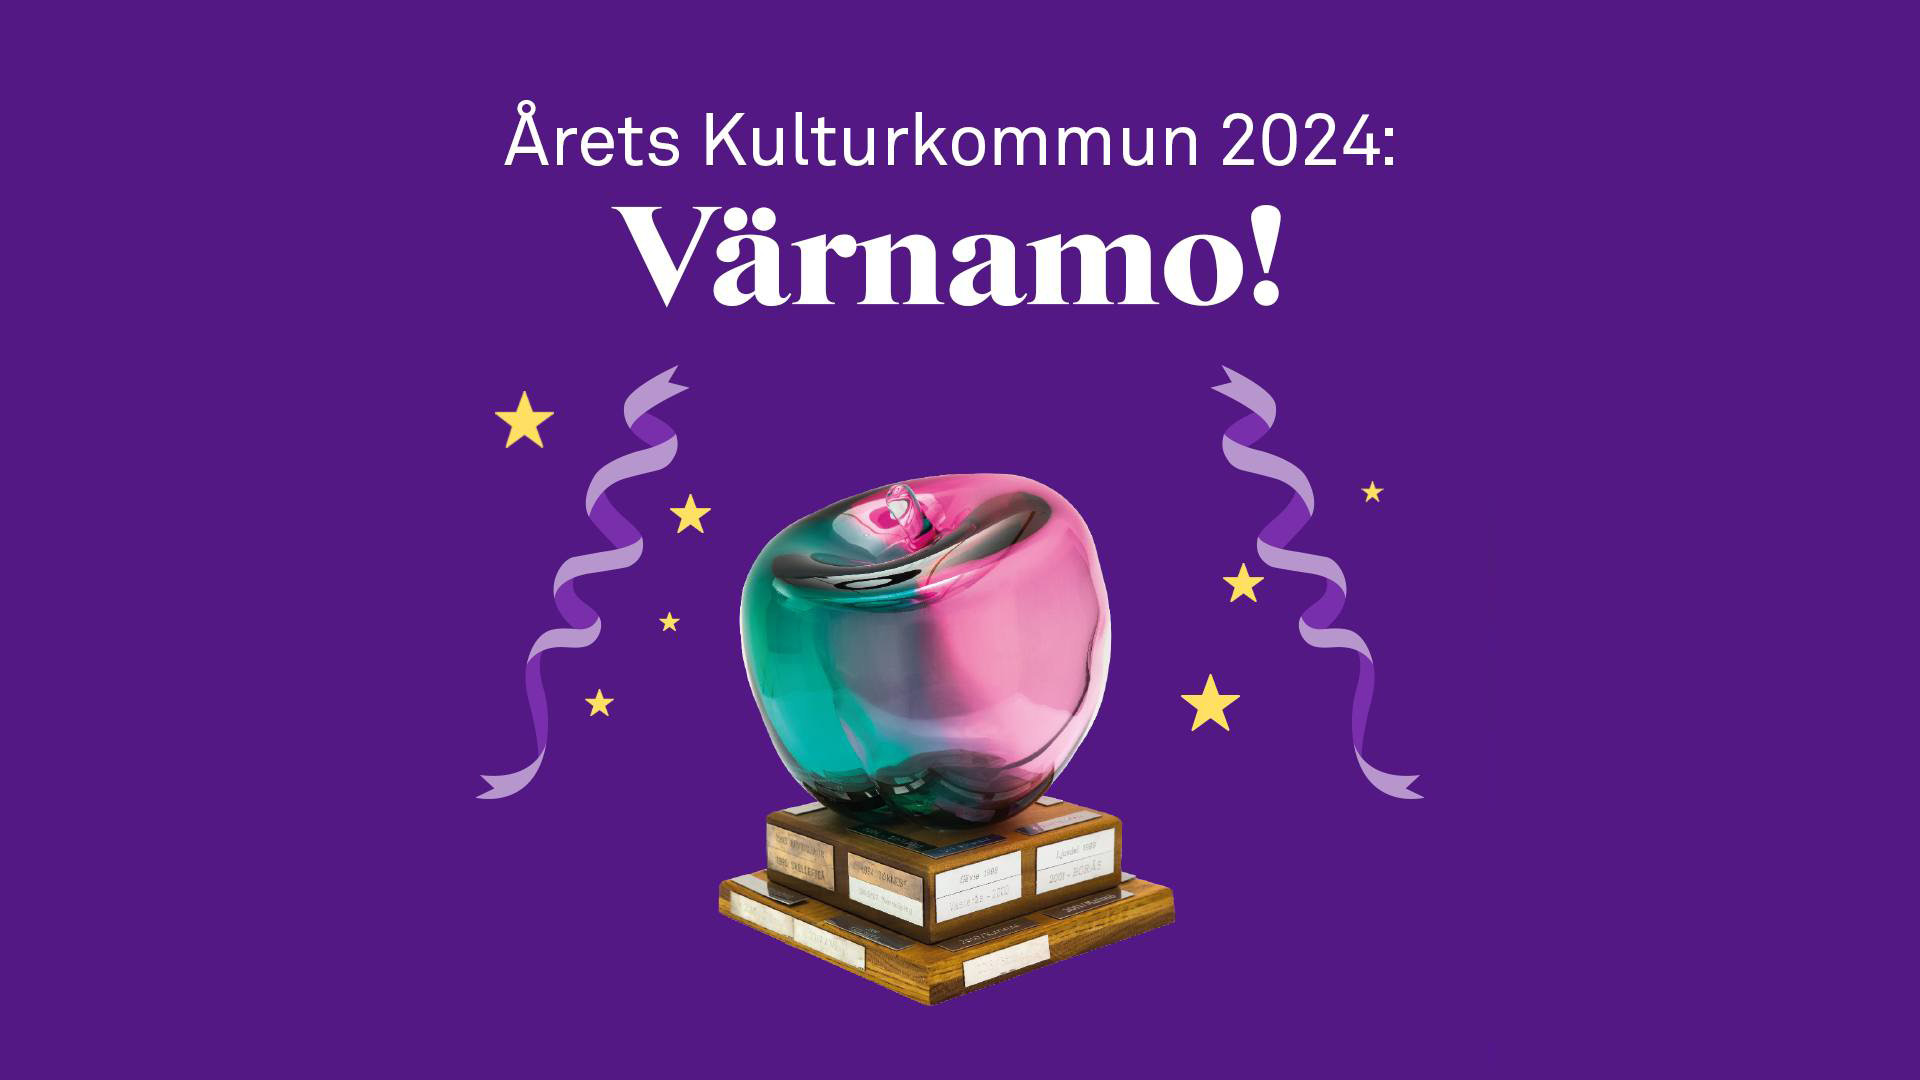 Bild av skulpturen för årets kulturkommun i form av ett äpple med texten "Årets kulturkommun 2024 värnamo"